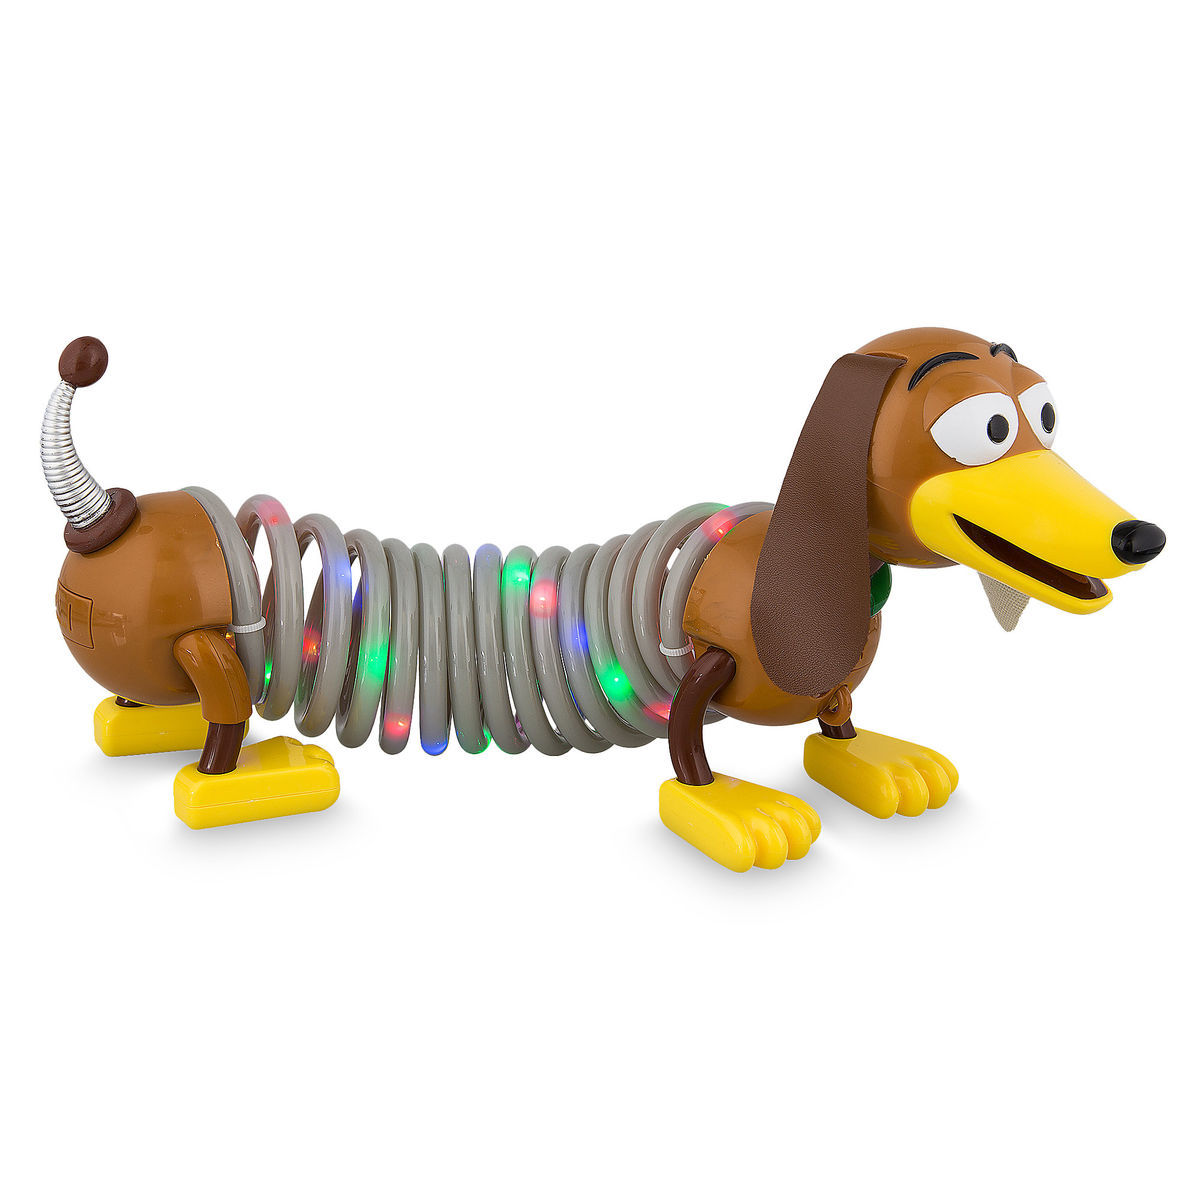 Slinky Dog Light-Up Figure - Toy Story